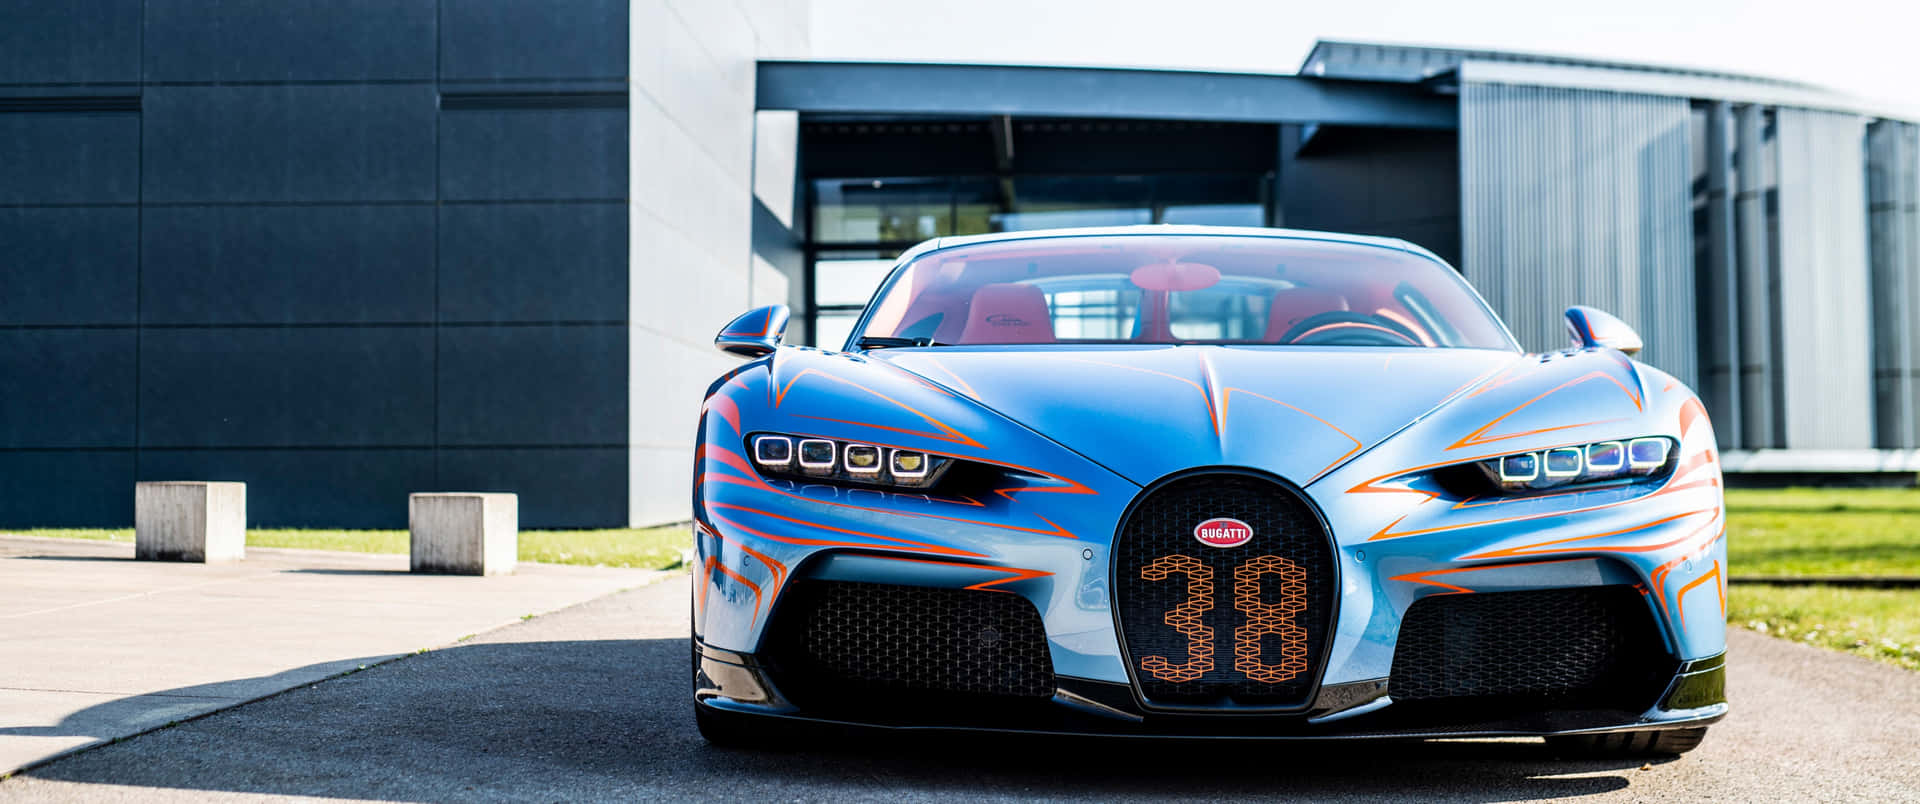 Race Into The Future With The Bugatti Car Wallpaper